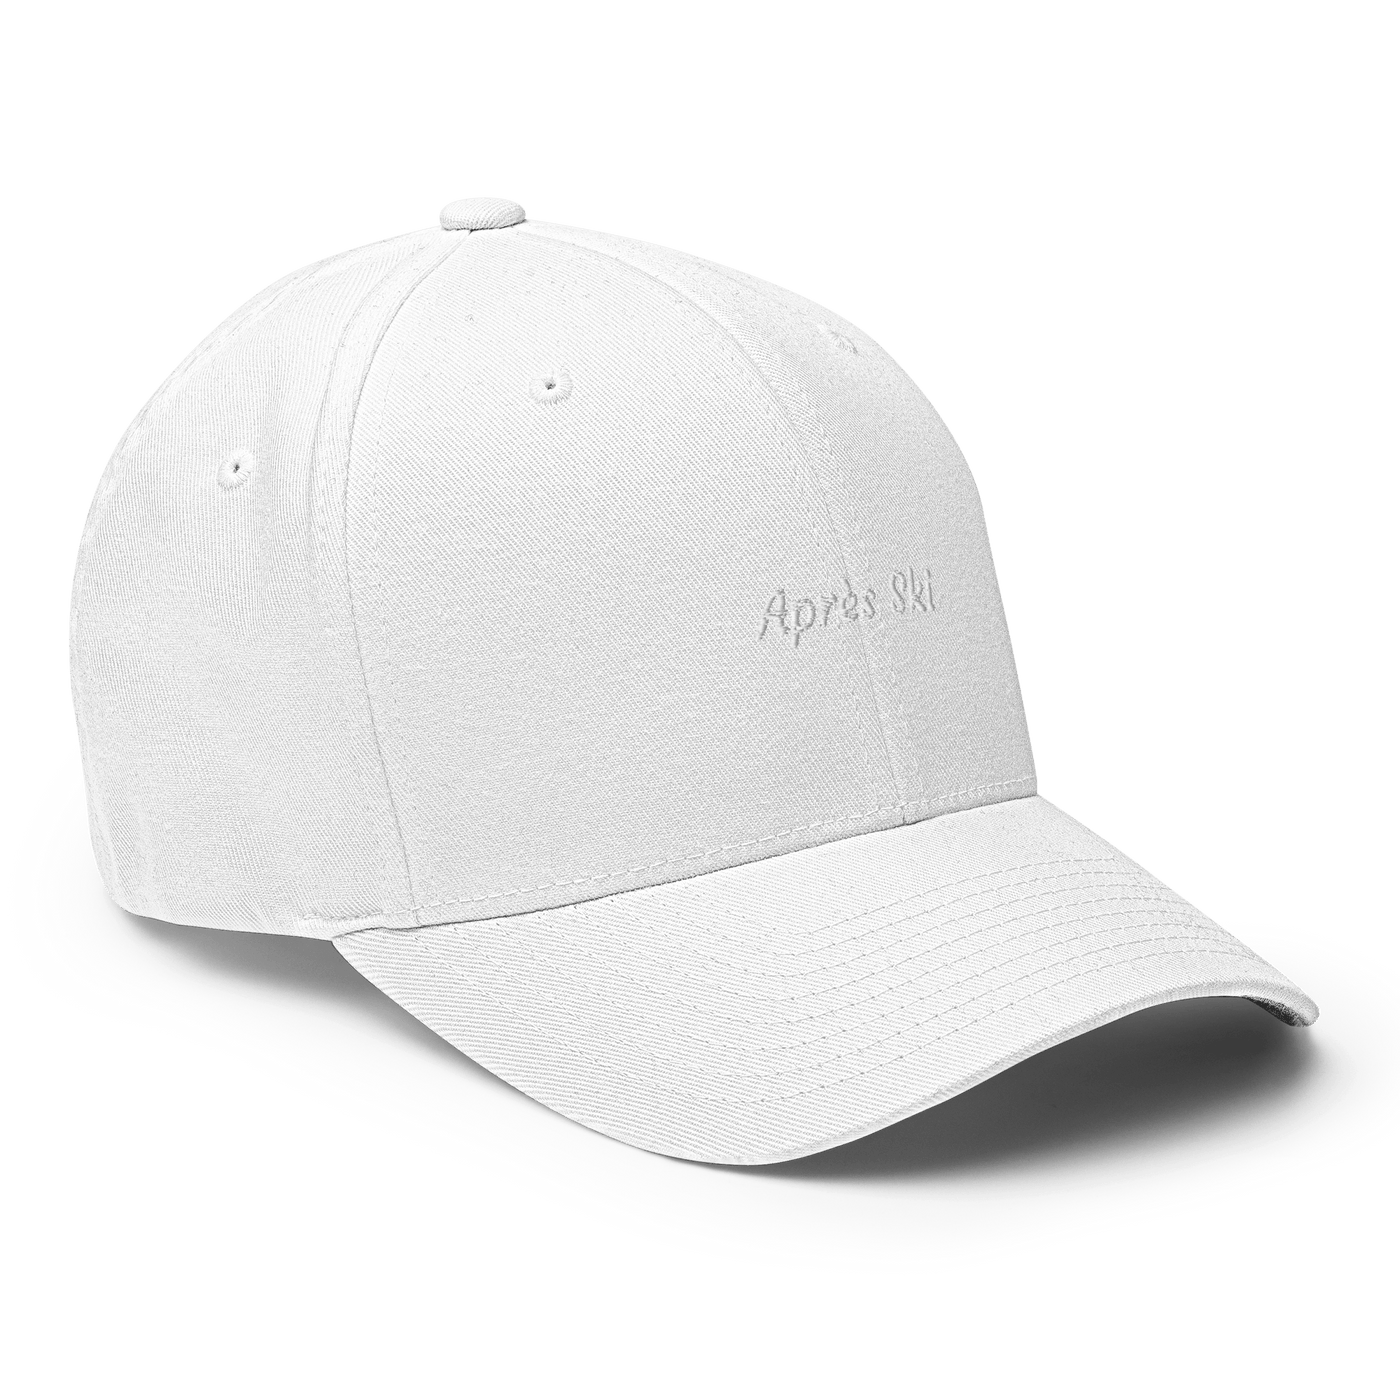 Après Ski Flexfit Cap - White - S/M - Just Another Cap Store